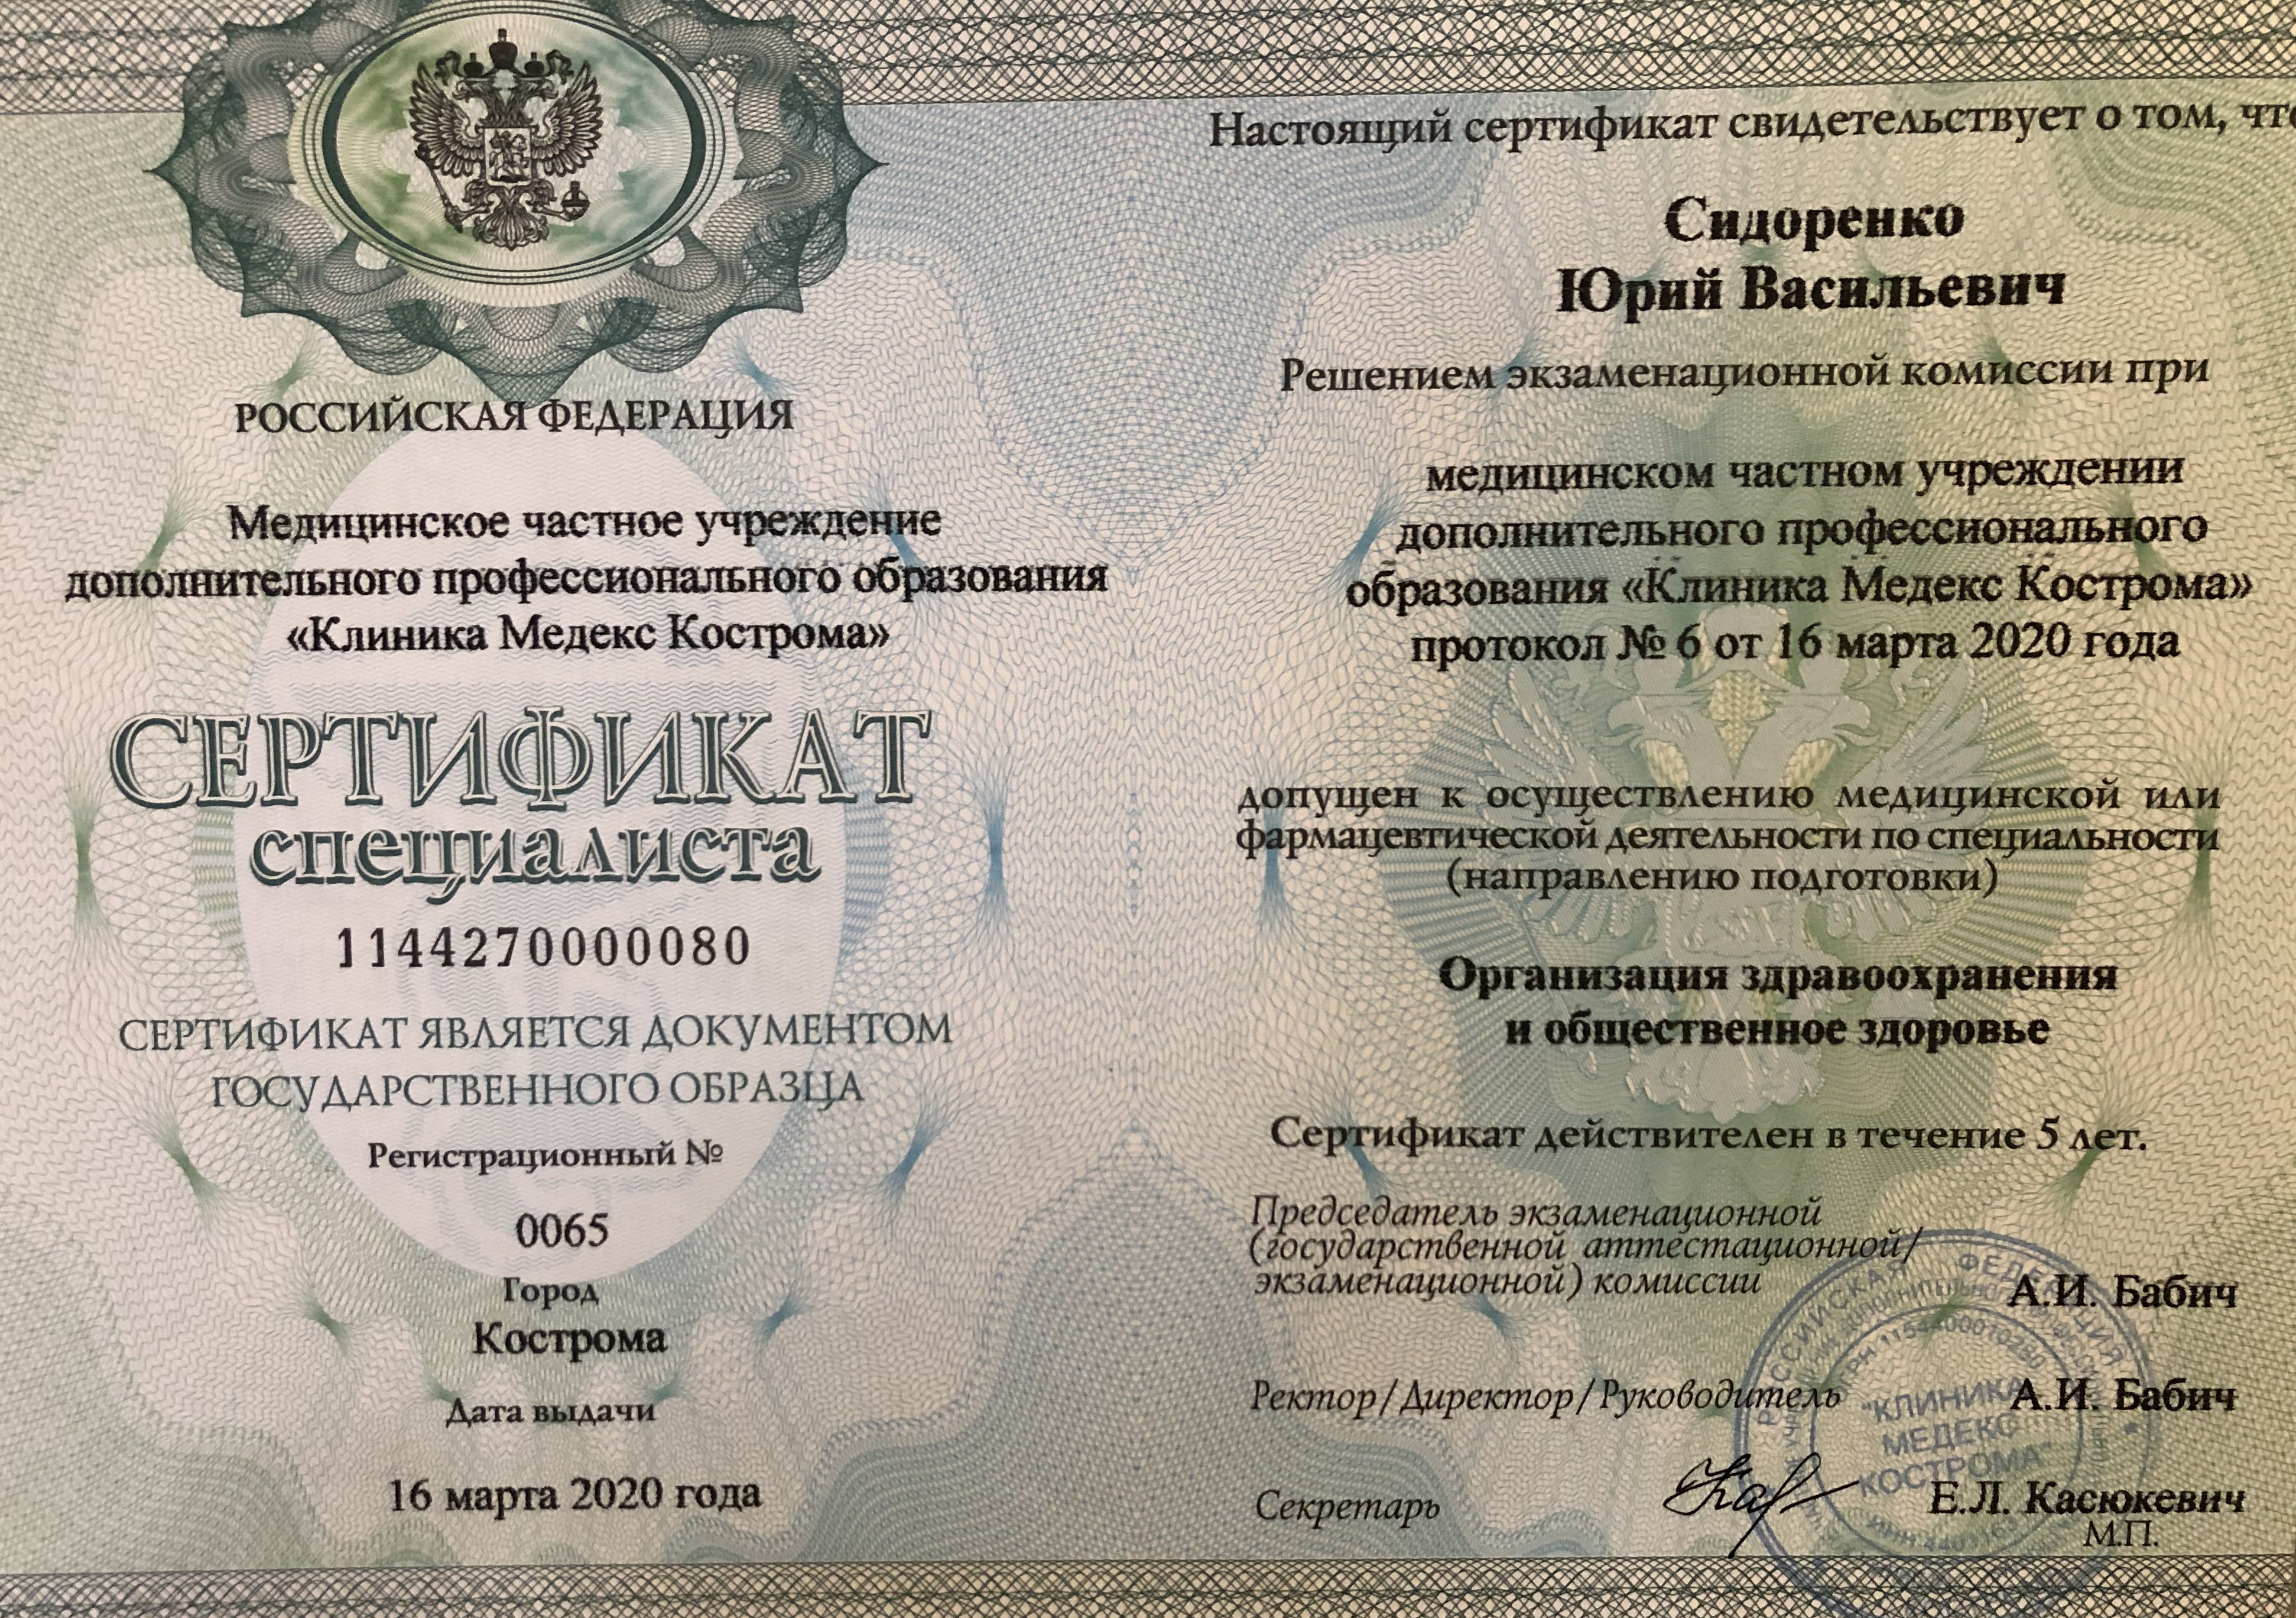 Сертификат специалиста (Организация здравоохранения)